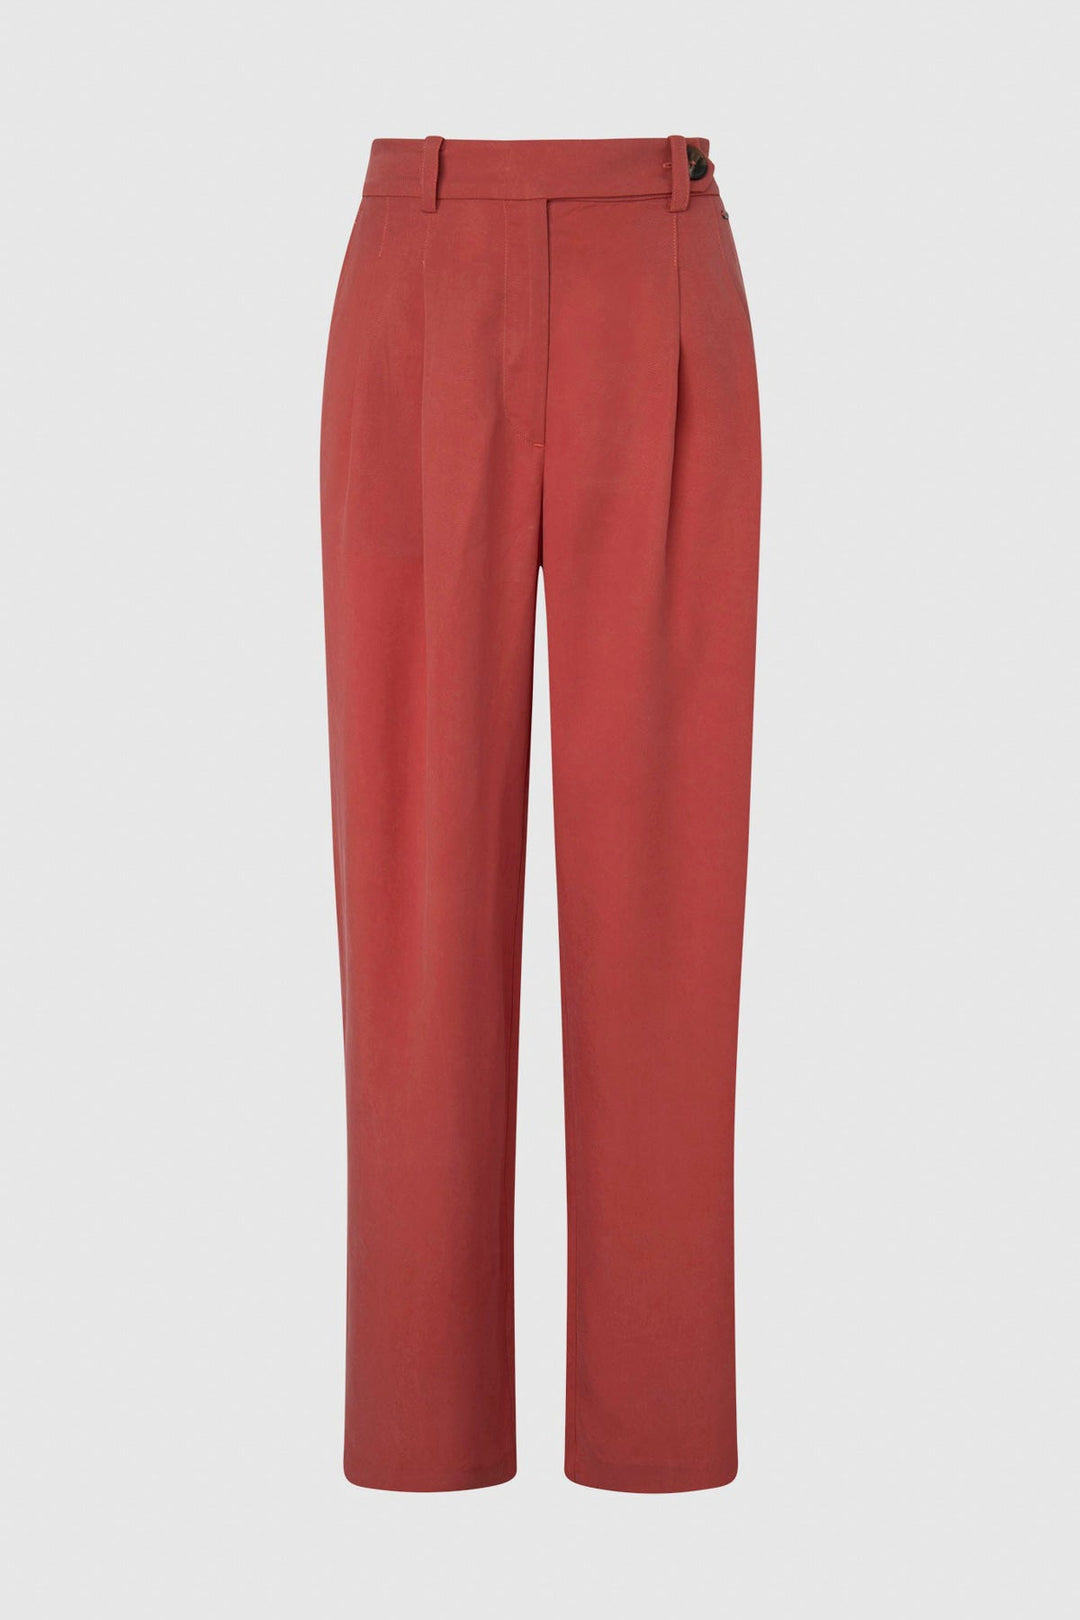 BERILA RED - Pepe Jeans